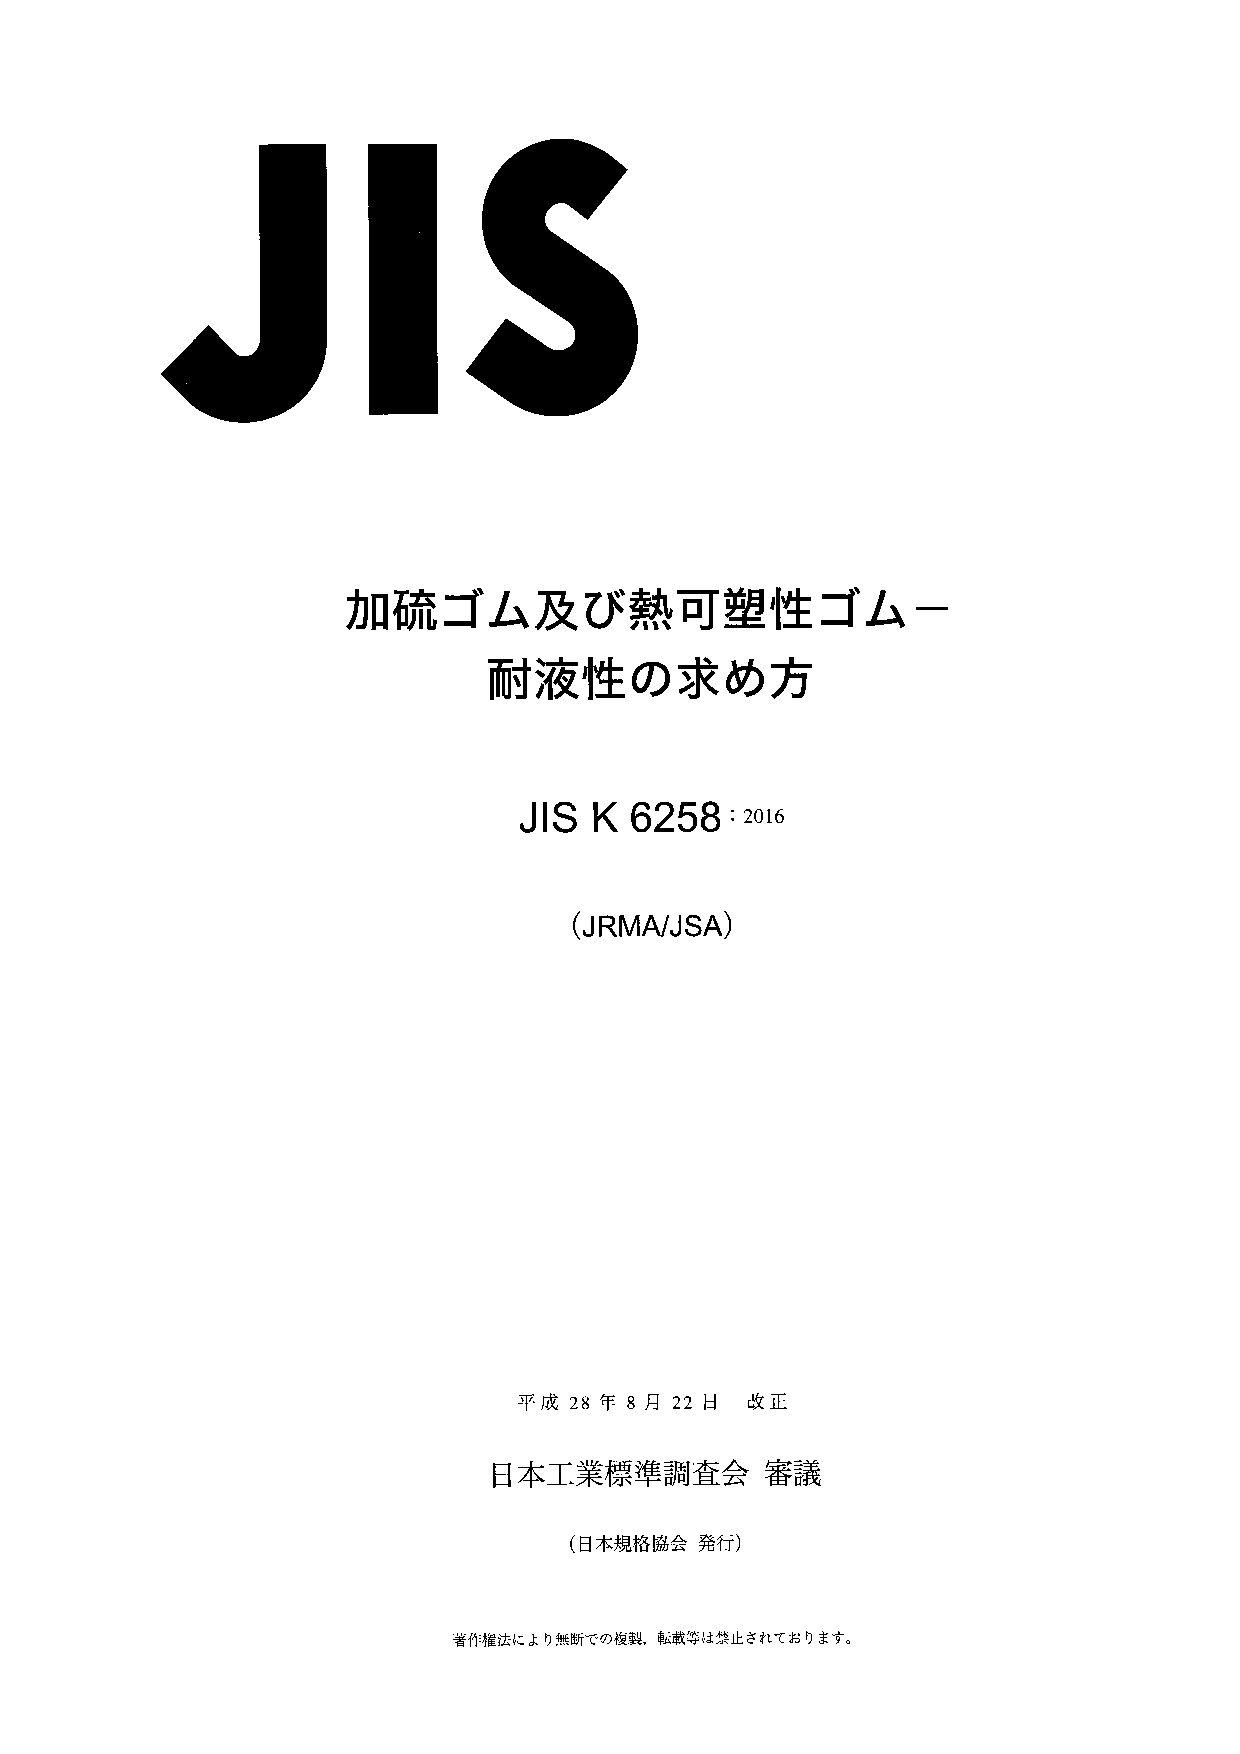 JIS K 6258:2016封面图